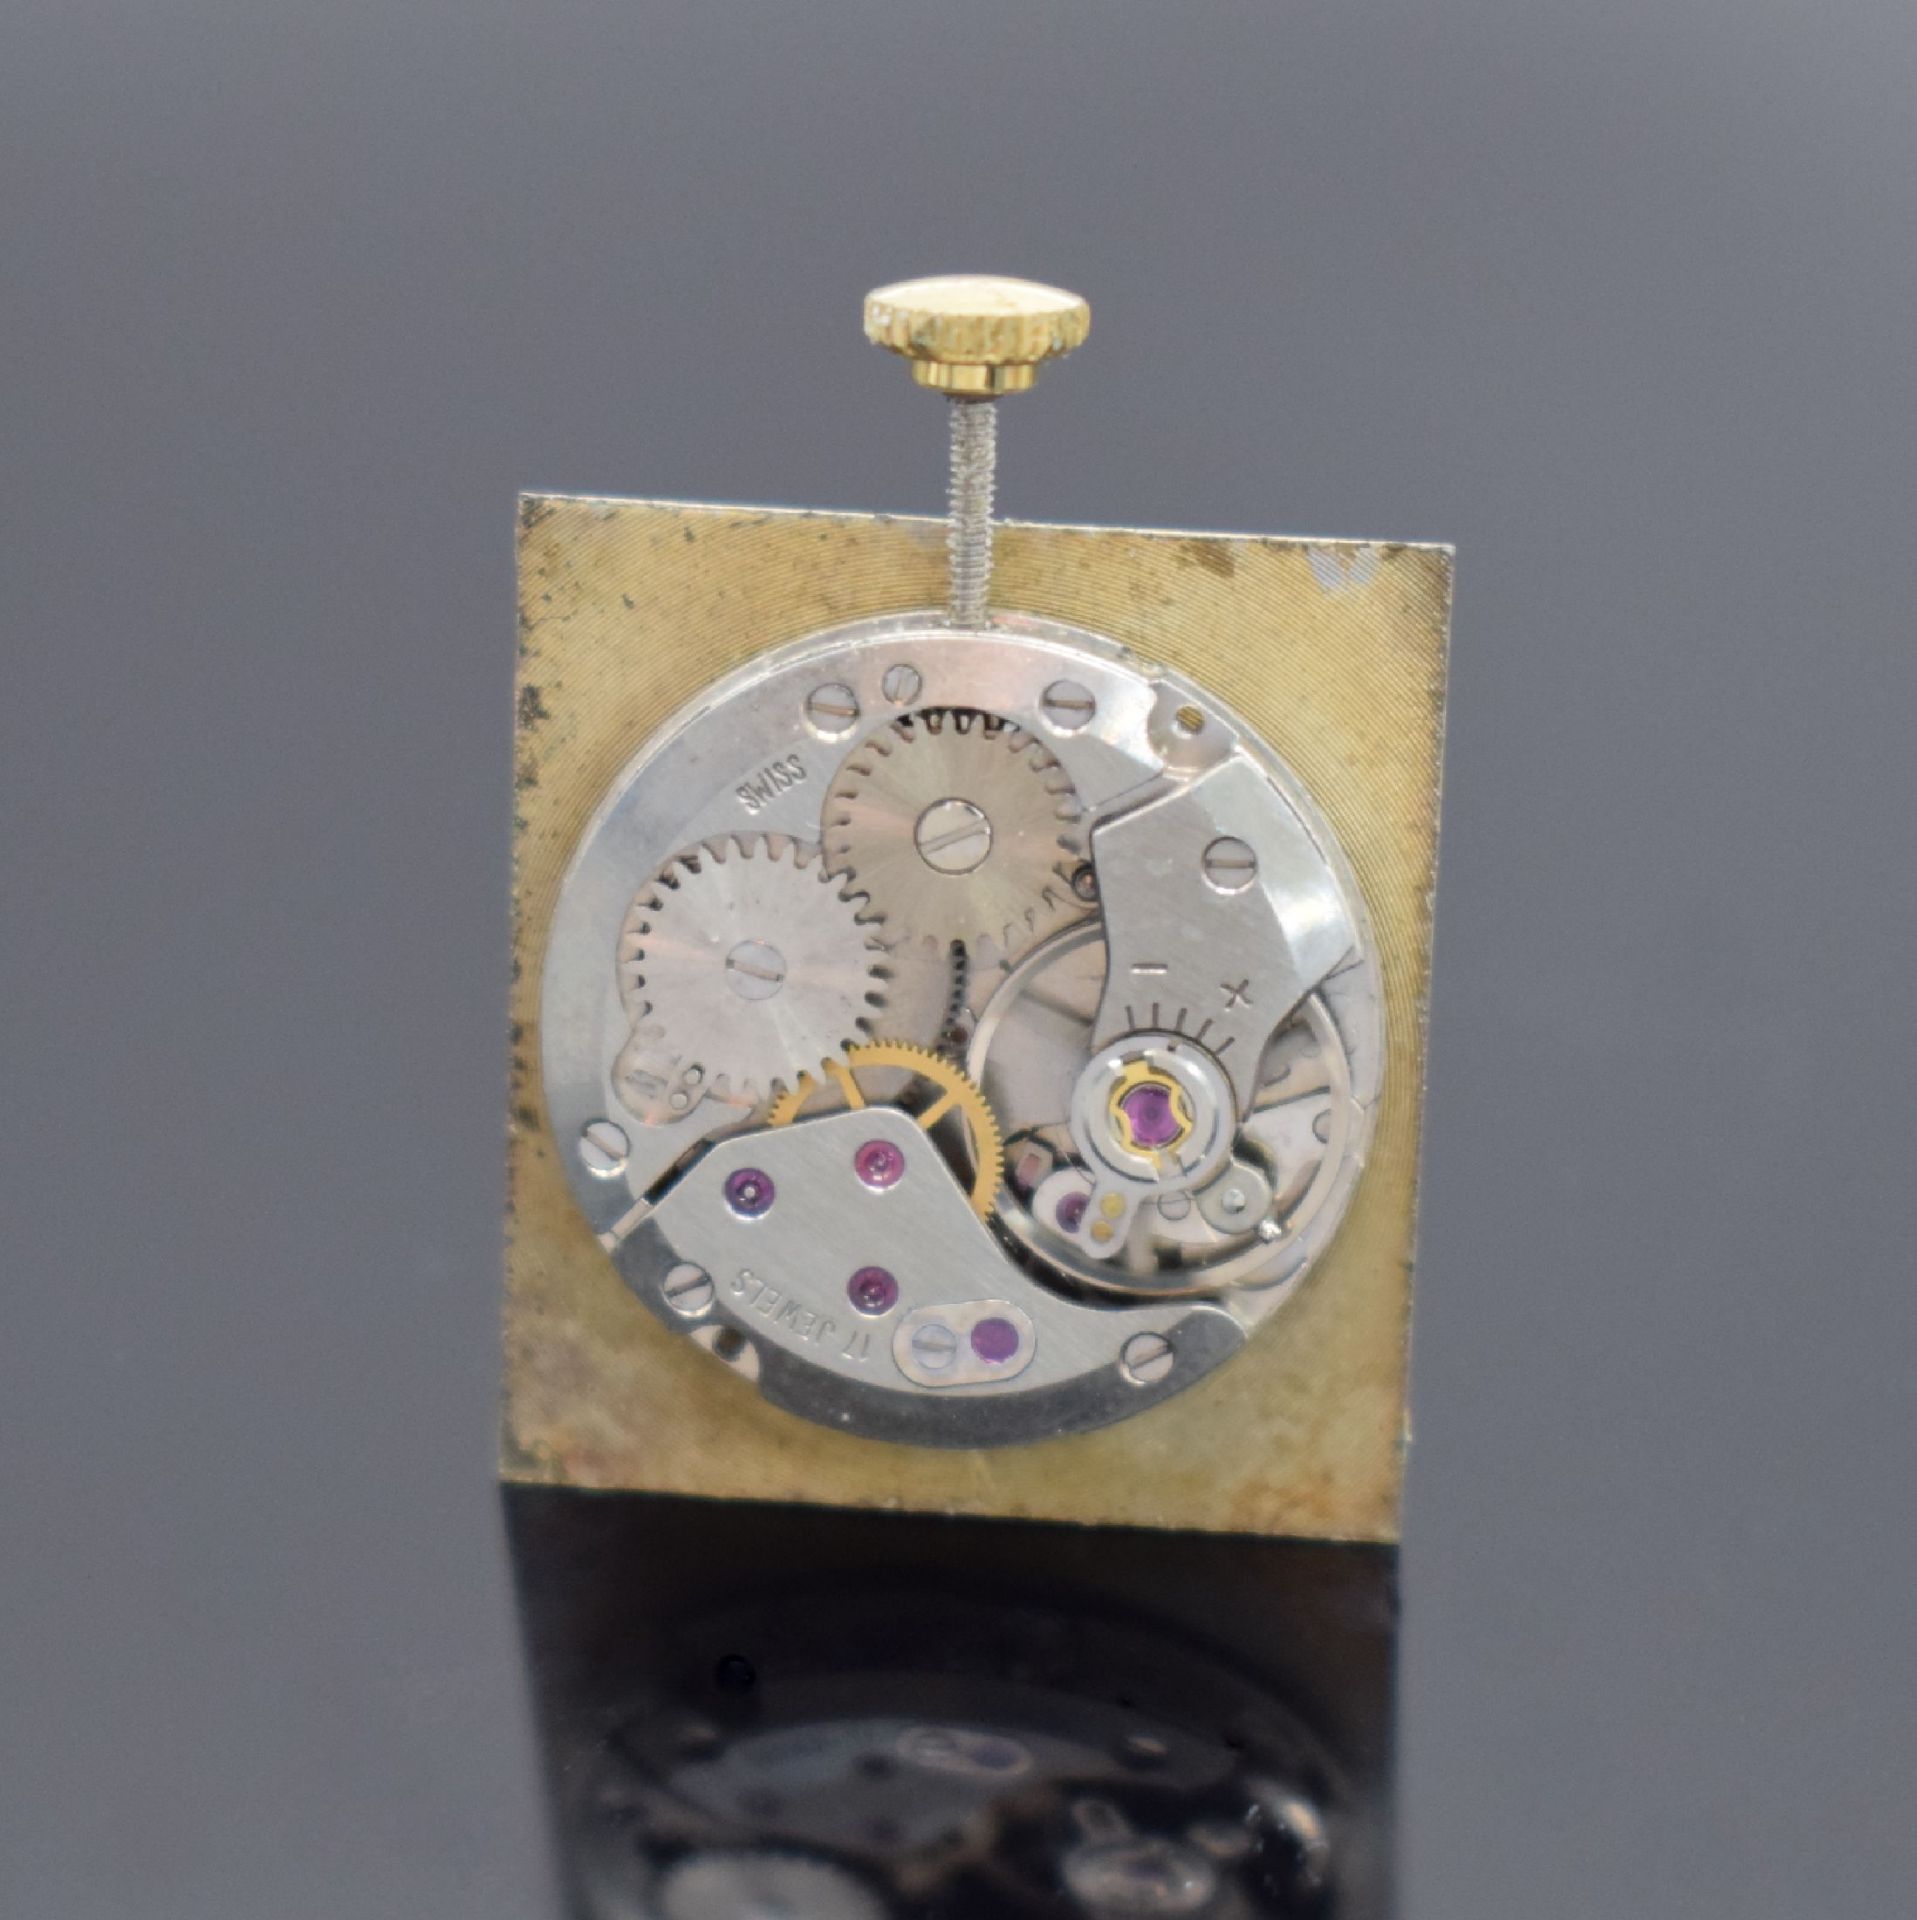 LE MONDE viereckige Armbanduhr in GG 585/000, Schweiz um - Image 5 of 5